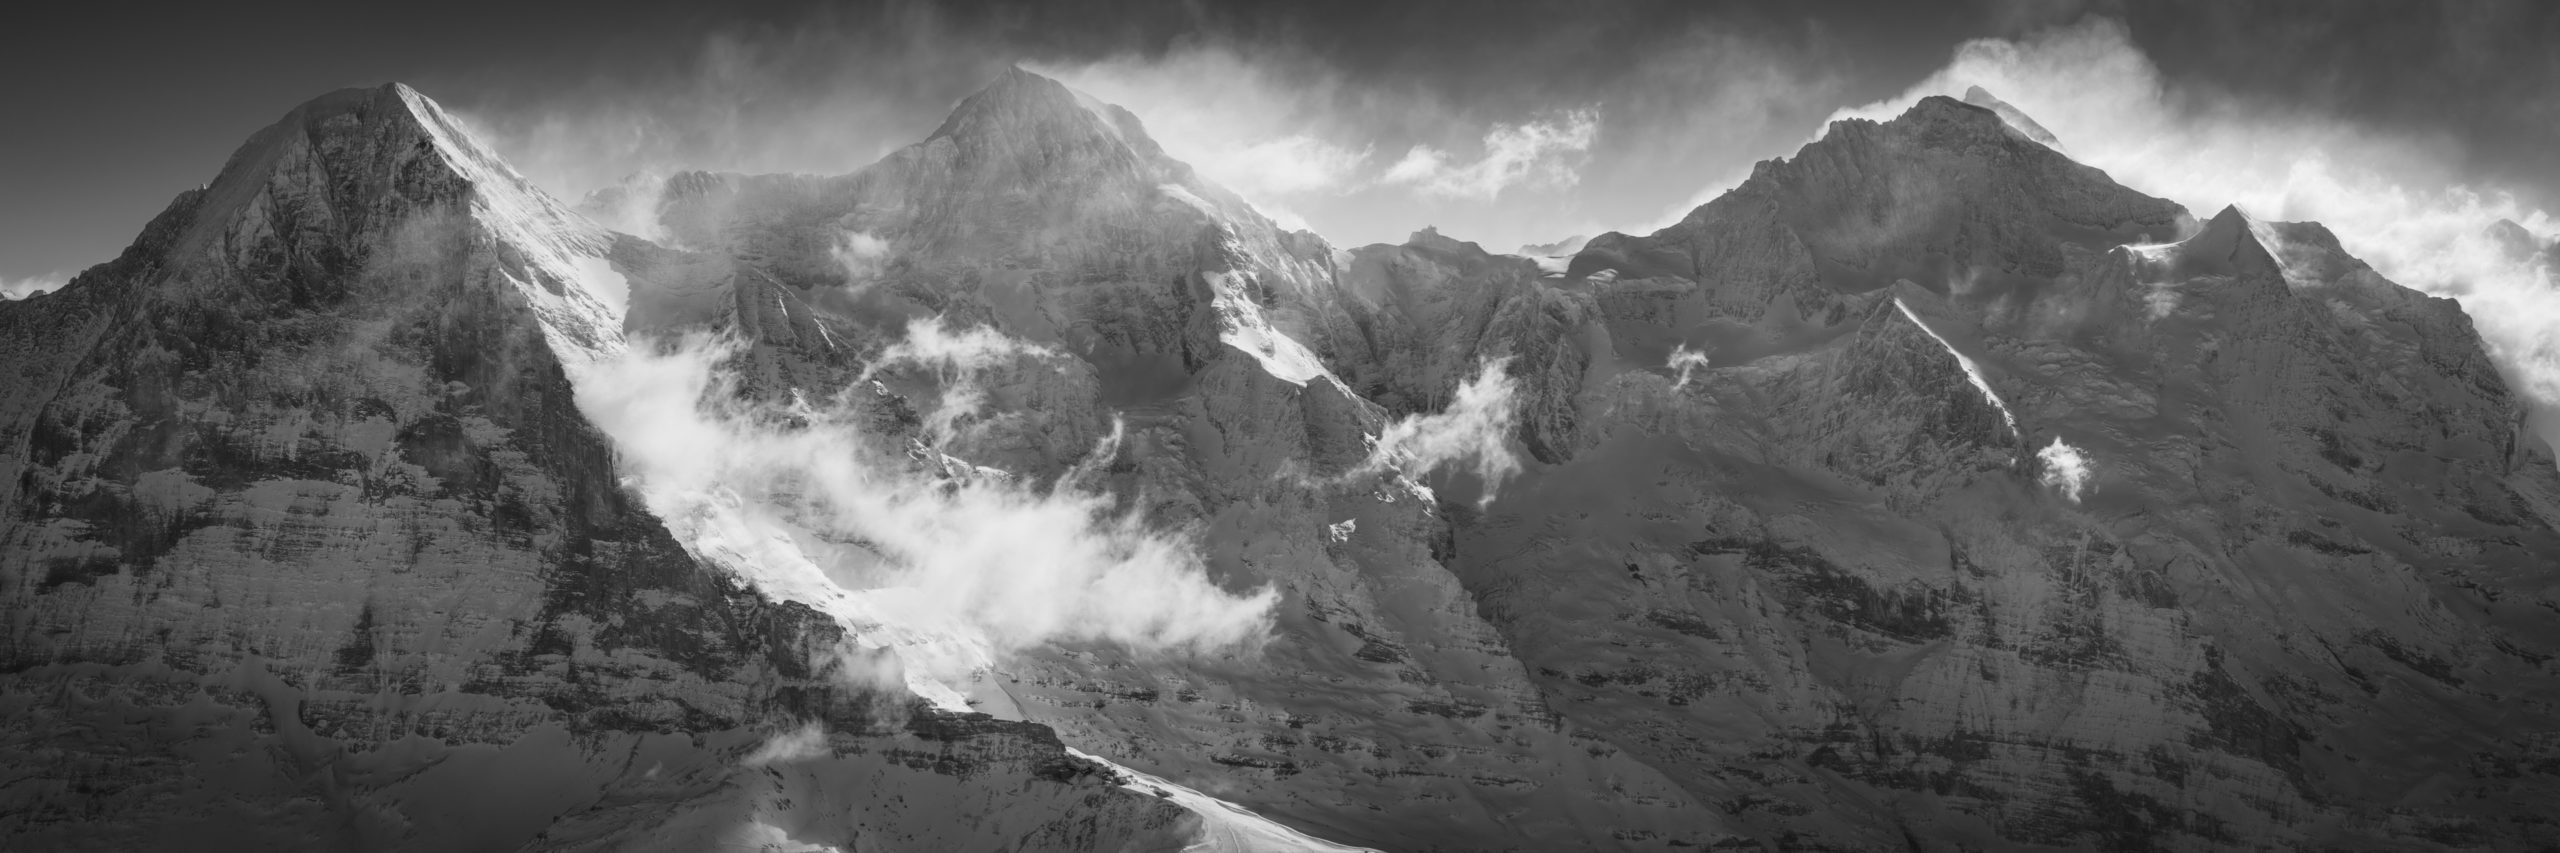 Eiger Monch Jungfau panorama - Alpes suisses sommets - Photos de montagne grindelwald